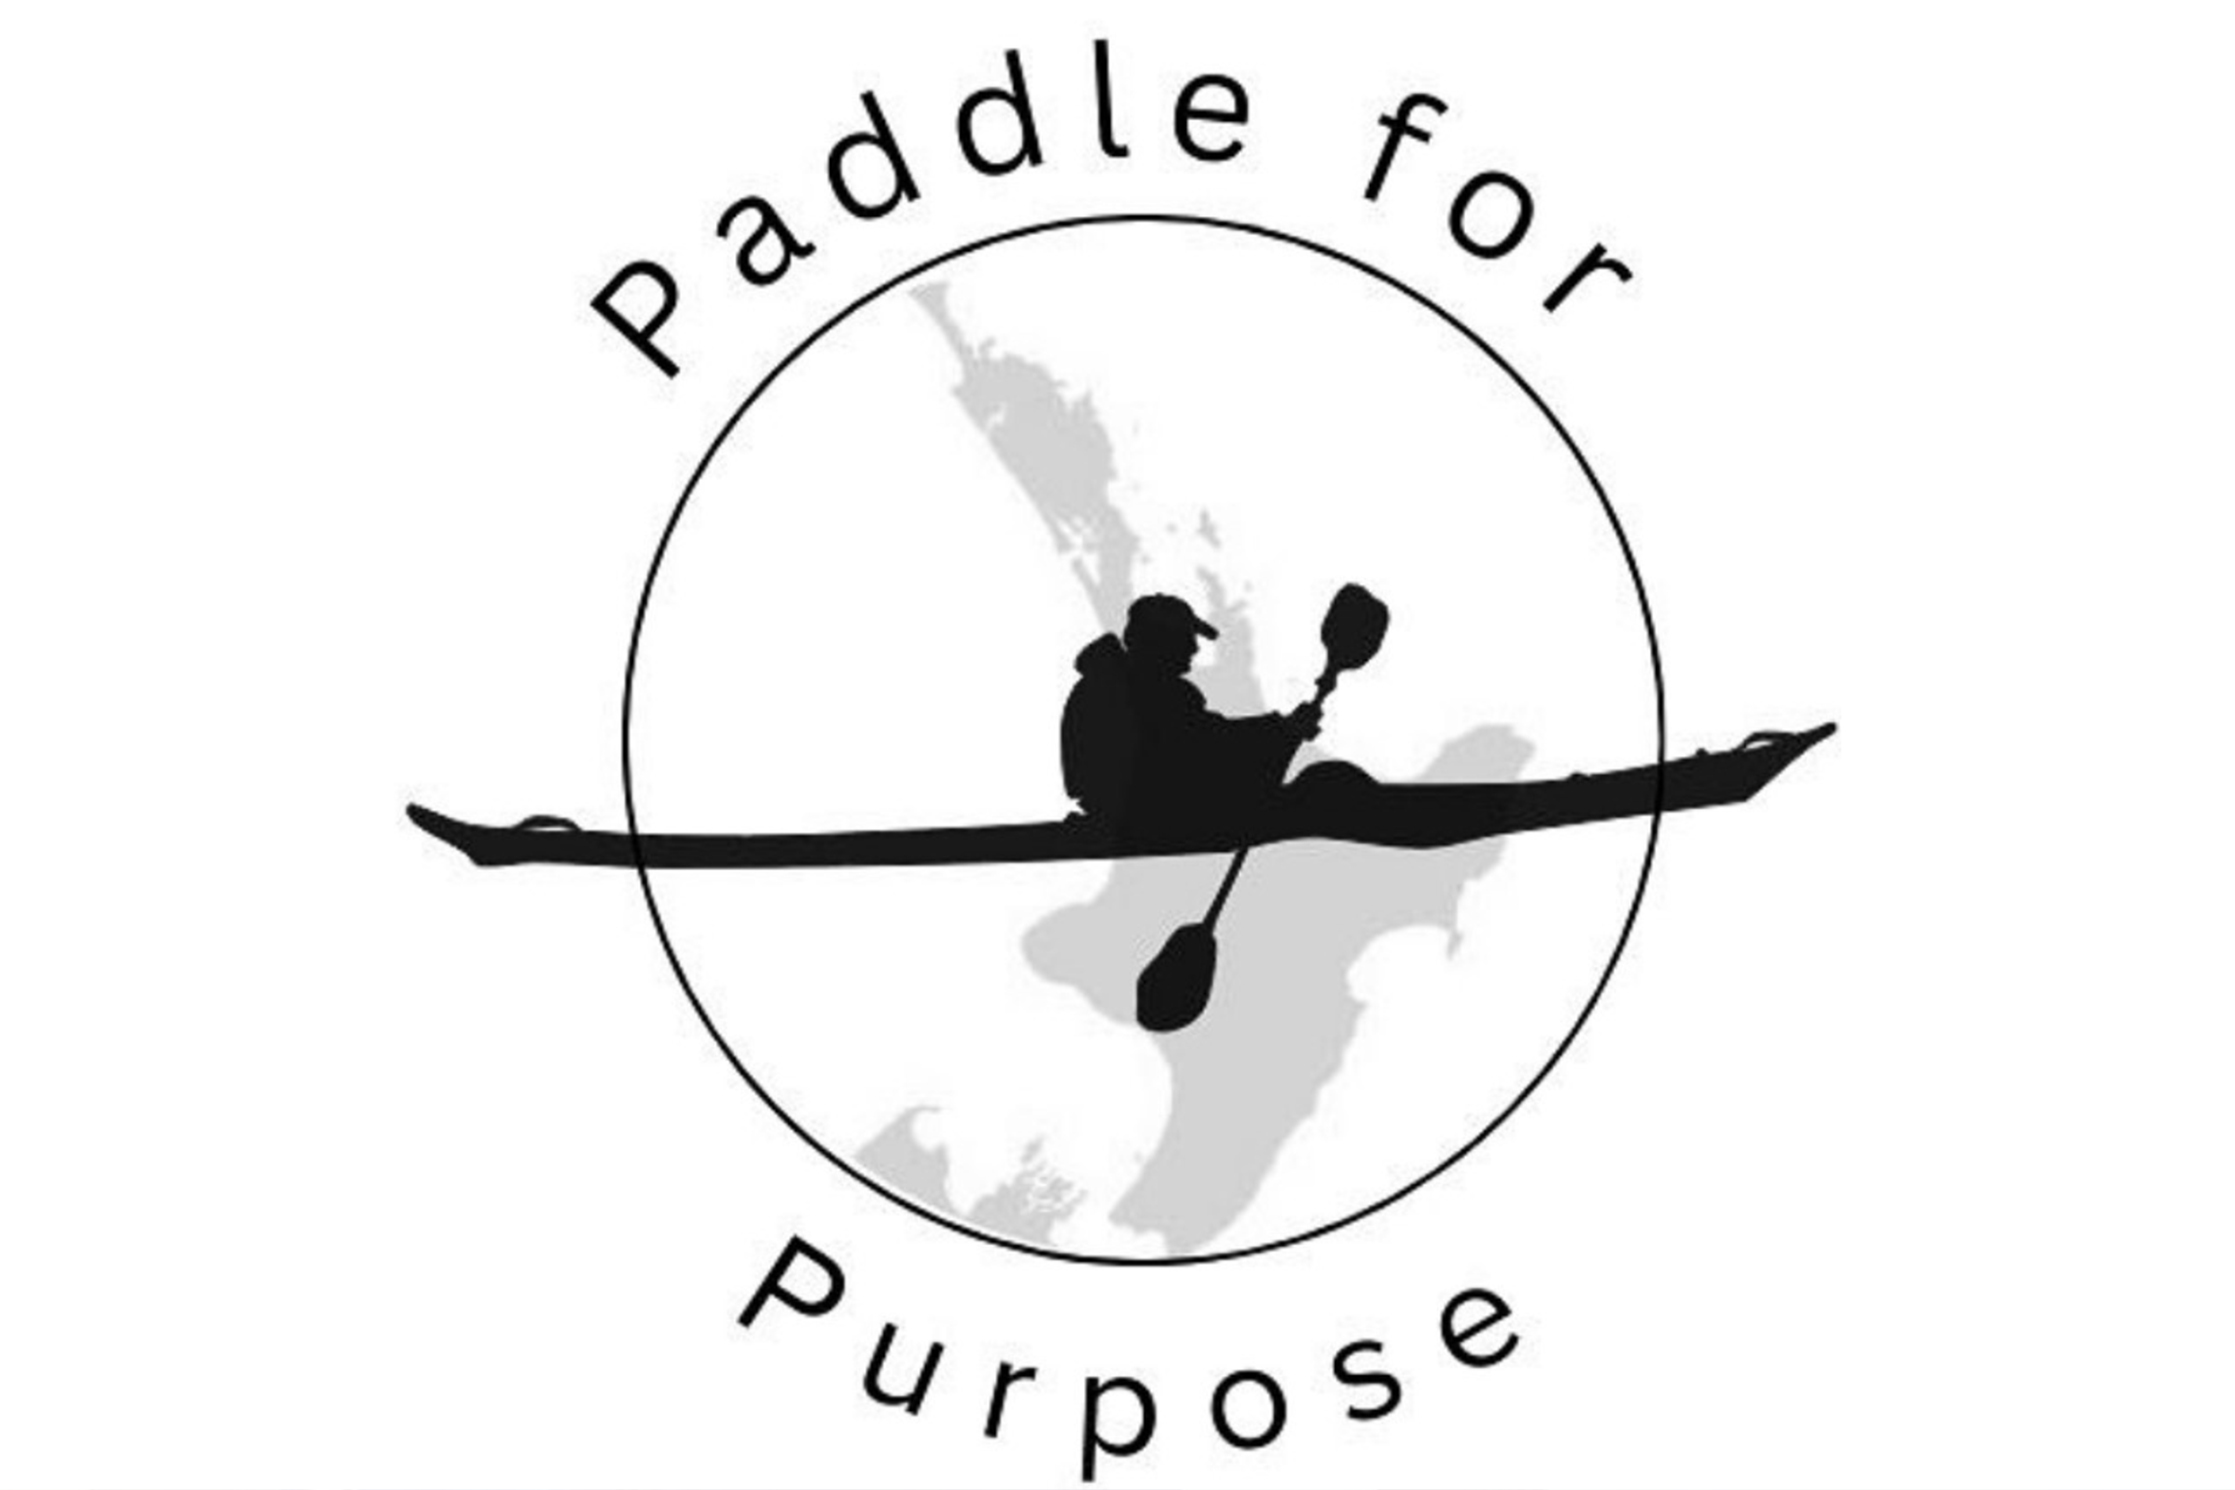 paddleforpurposeLarge Full Width 2235x1490 v3